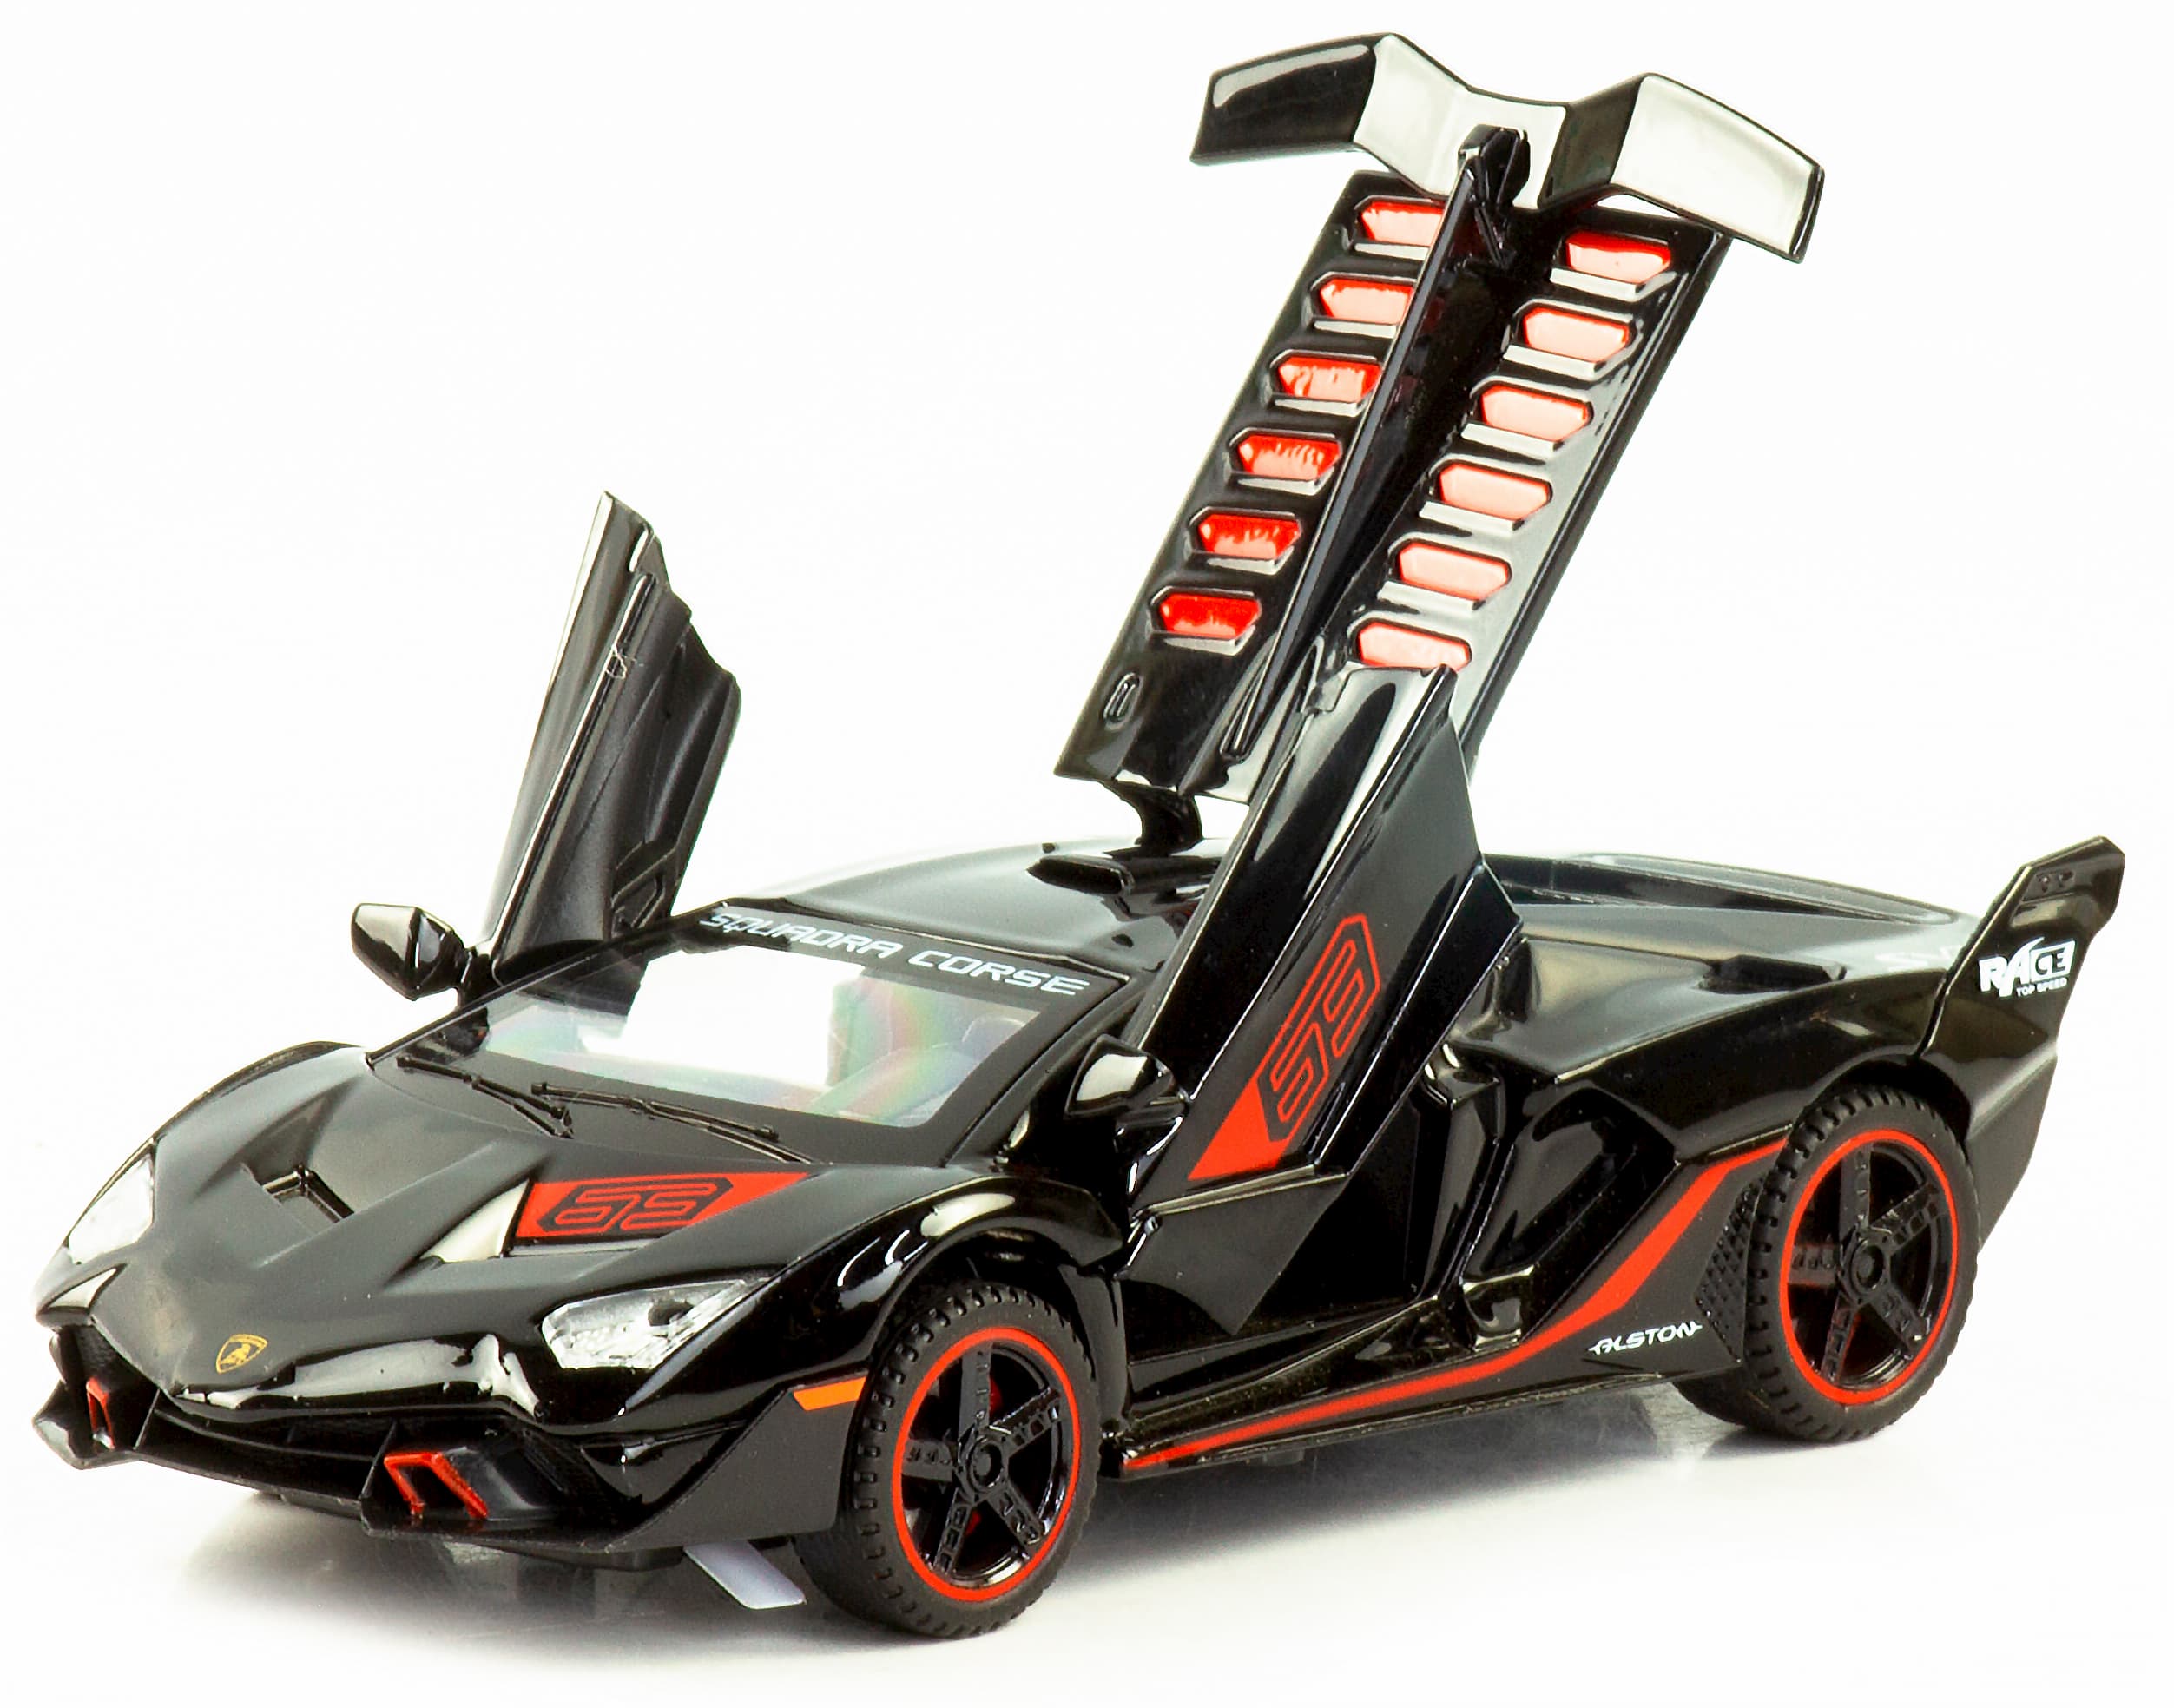 Металлическая машинка Jiaye Model 1:32 «Lamborghini Aventador SC18» 32621, звук, свет, инерционная / Черный